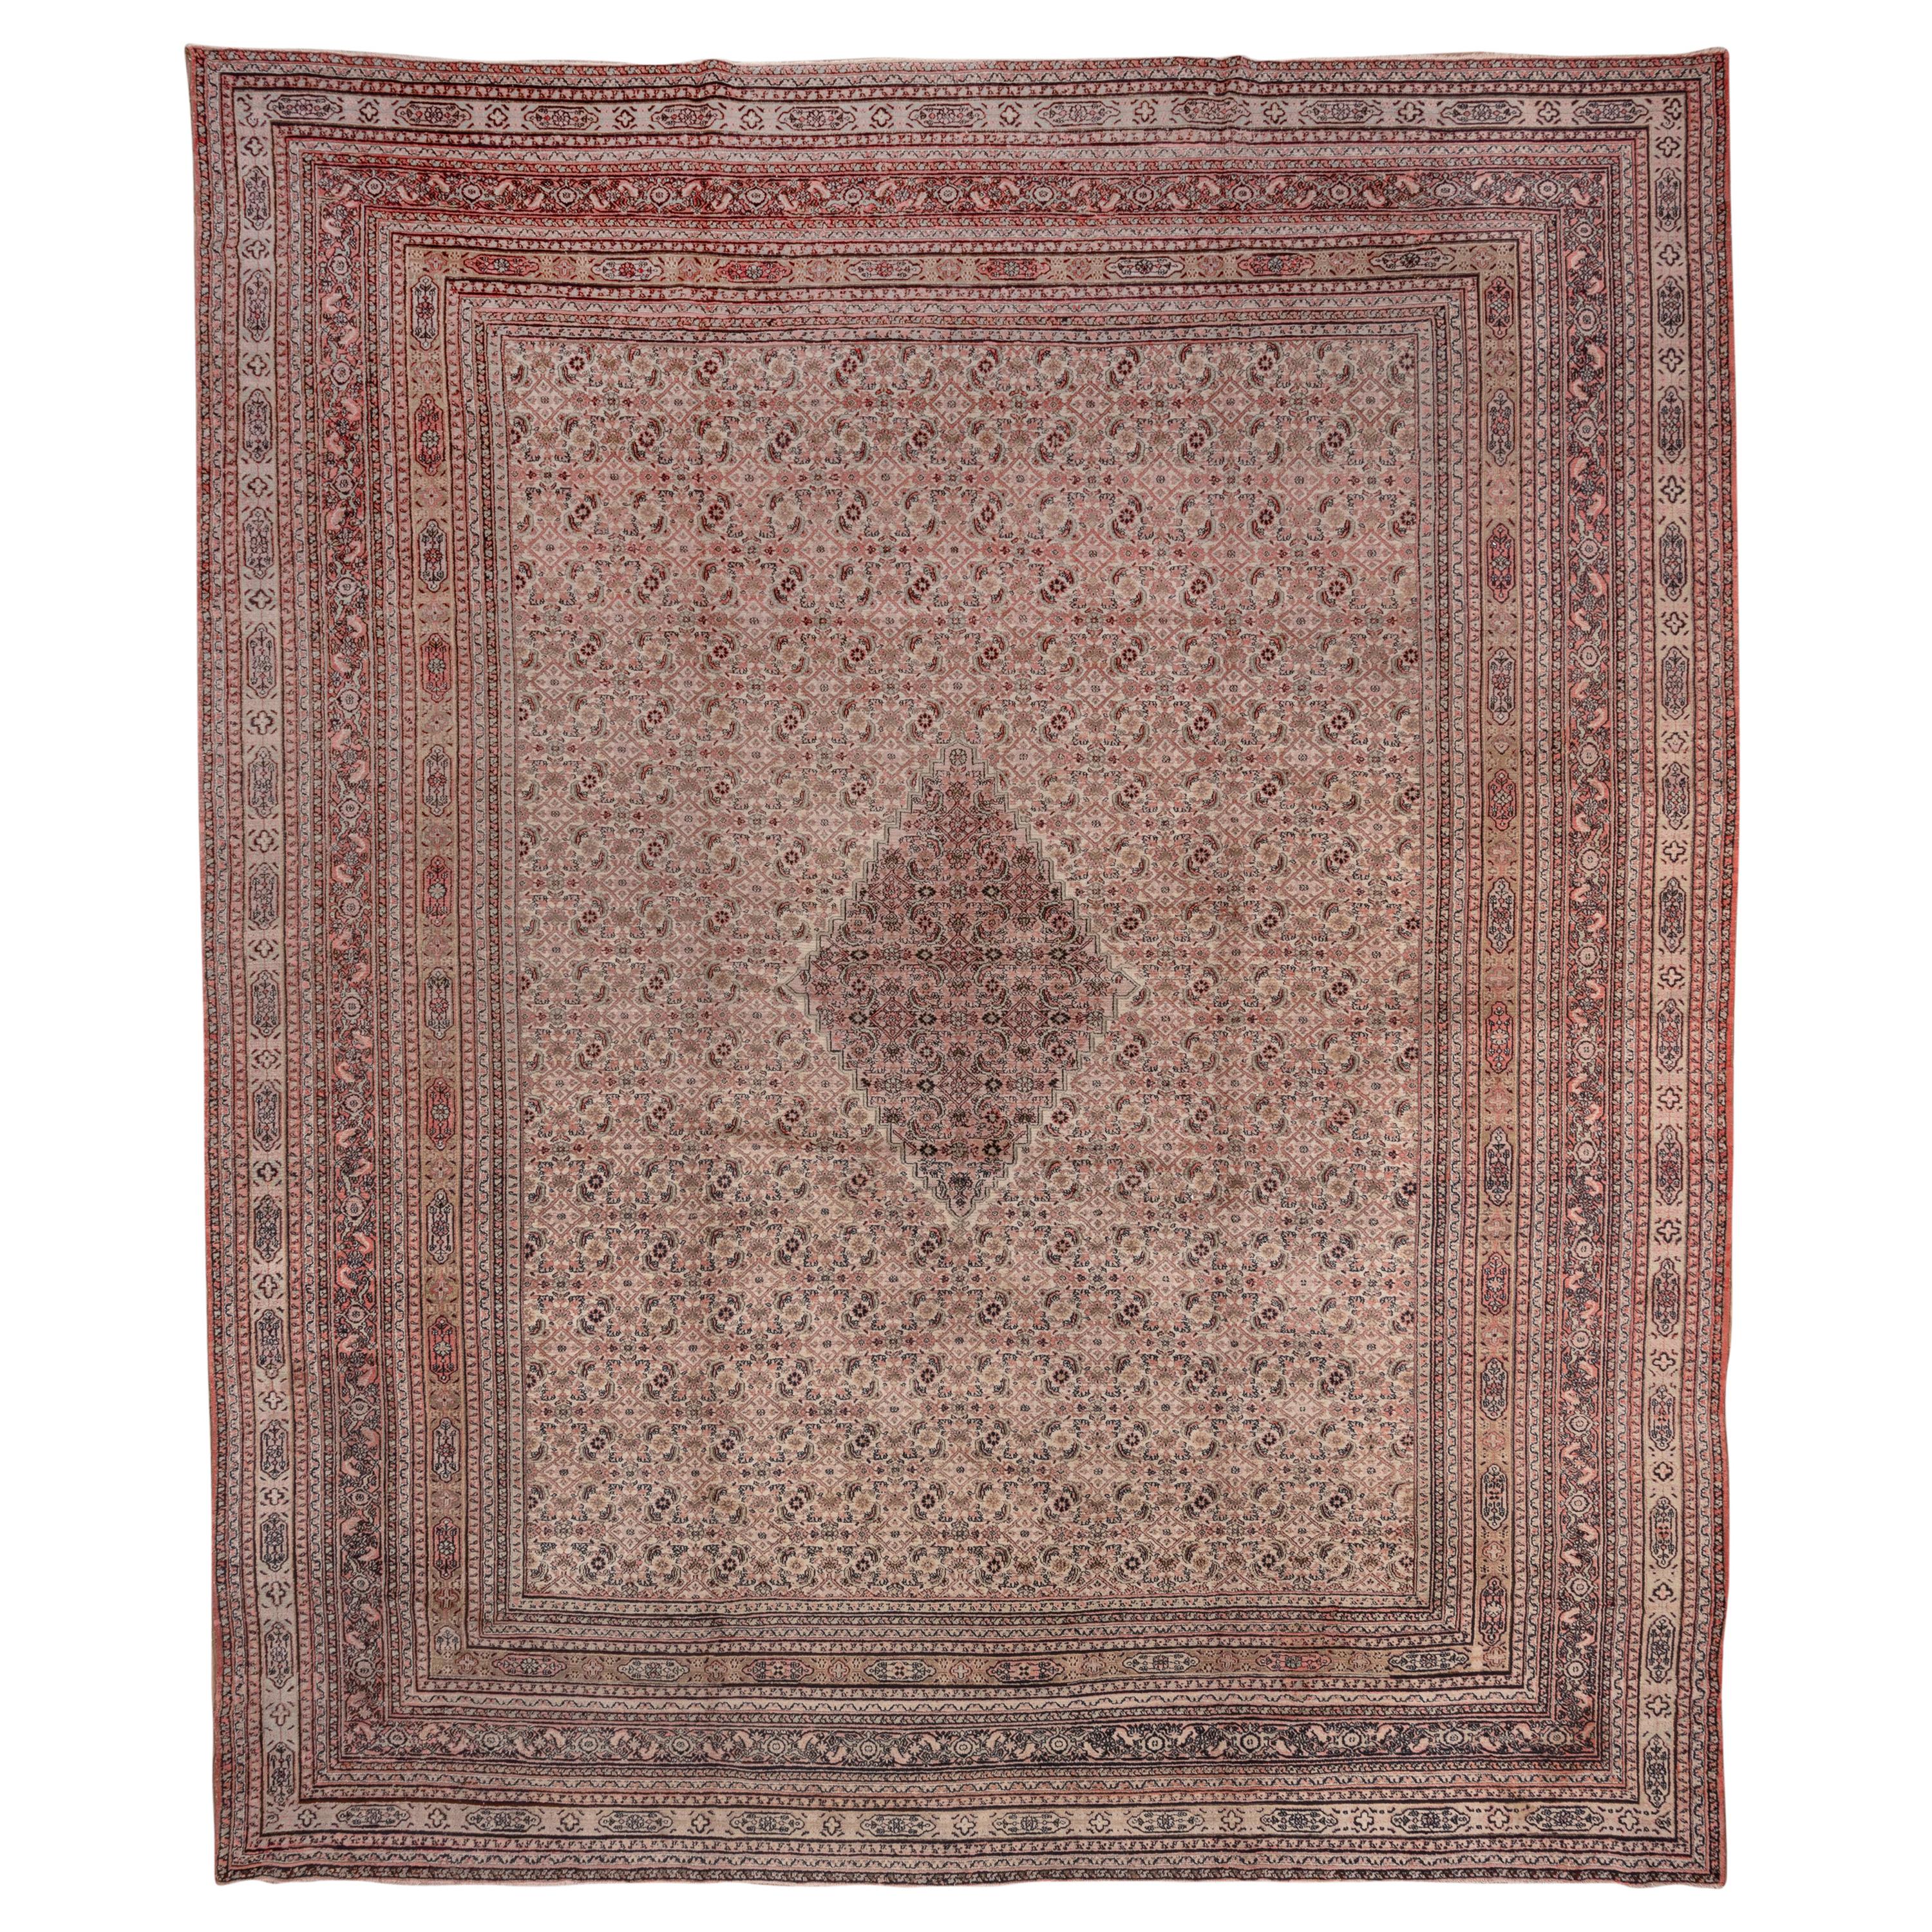 Magnifique tapis de manoir persan ancien du Khorassan, vers 1900